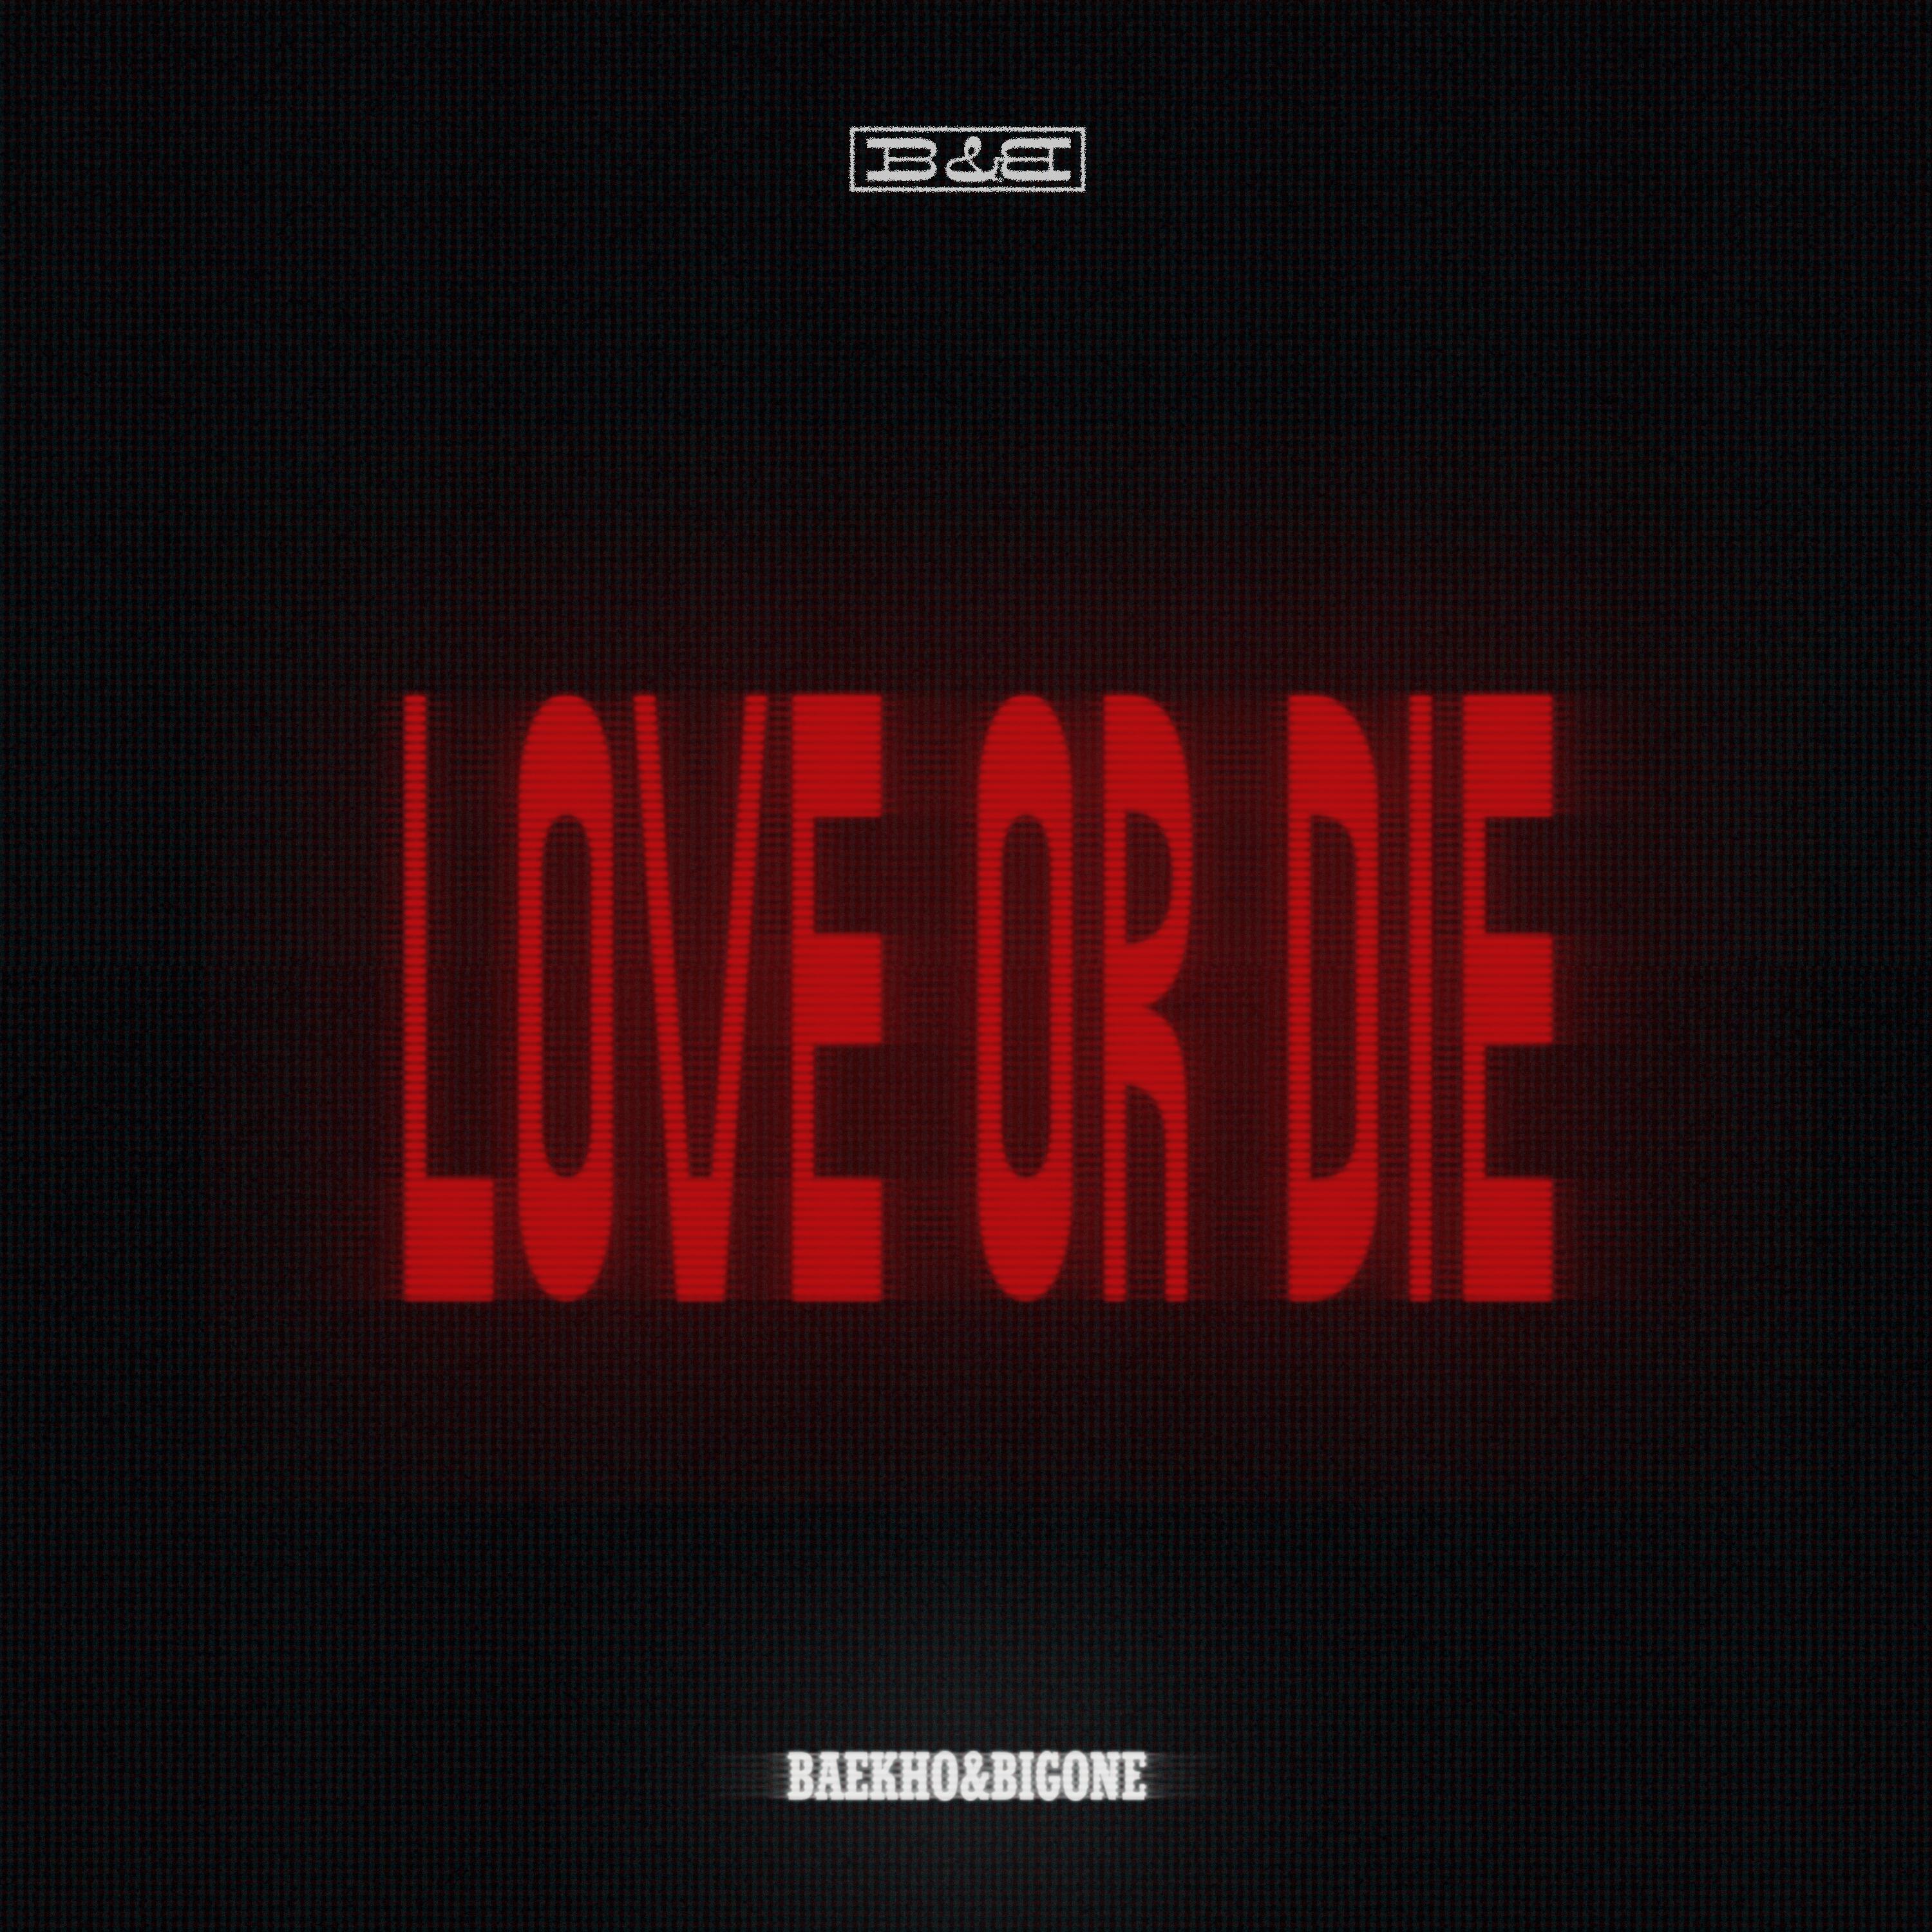 LOVE OR DIE专辑